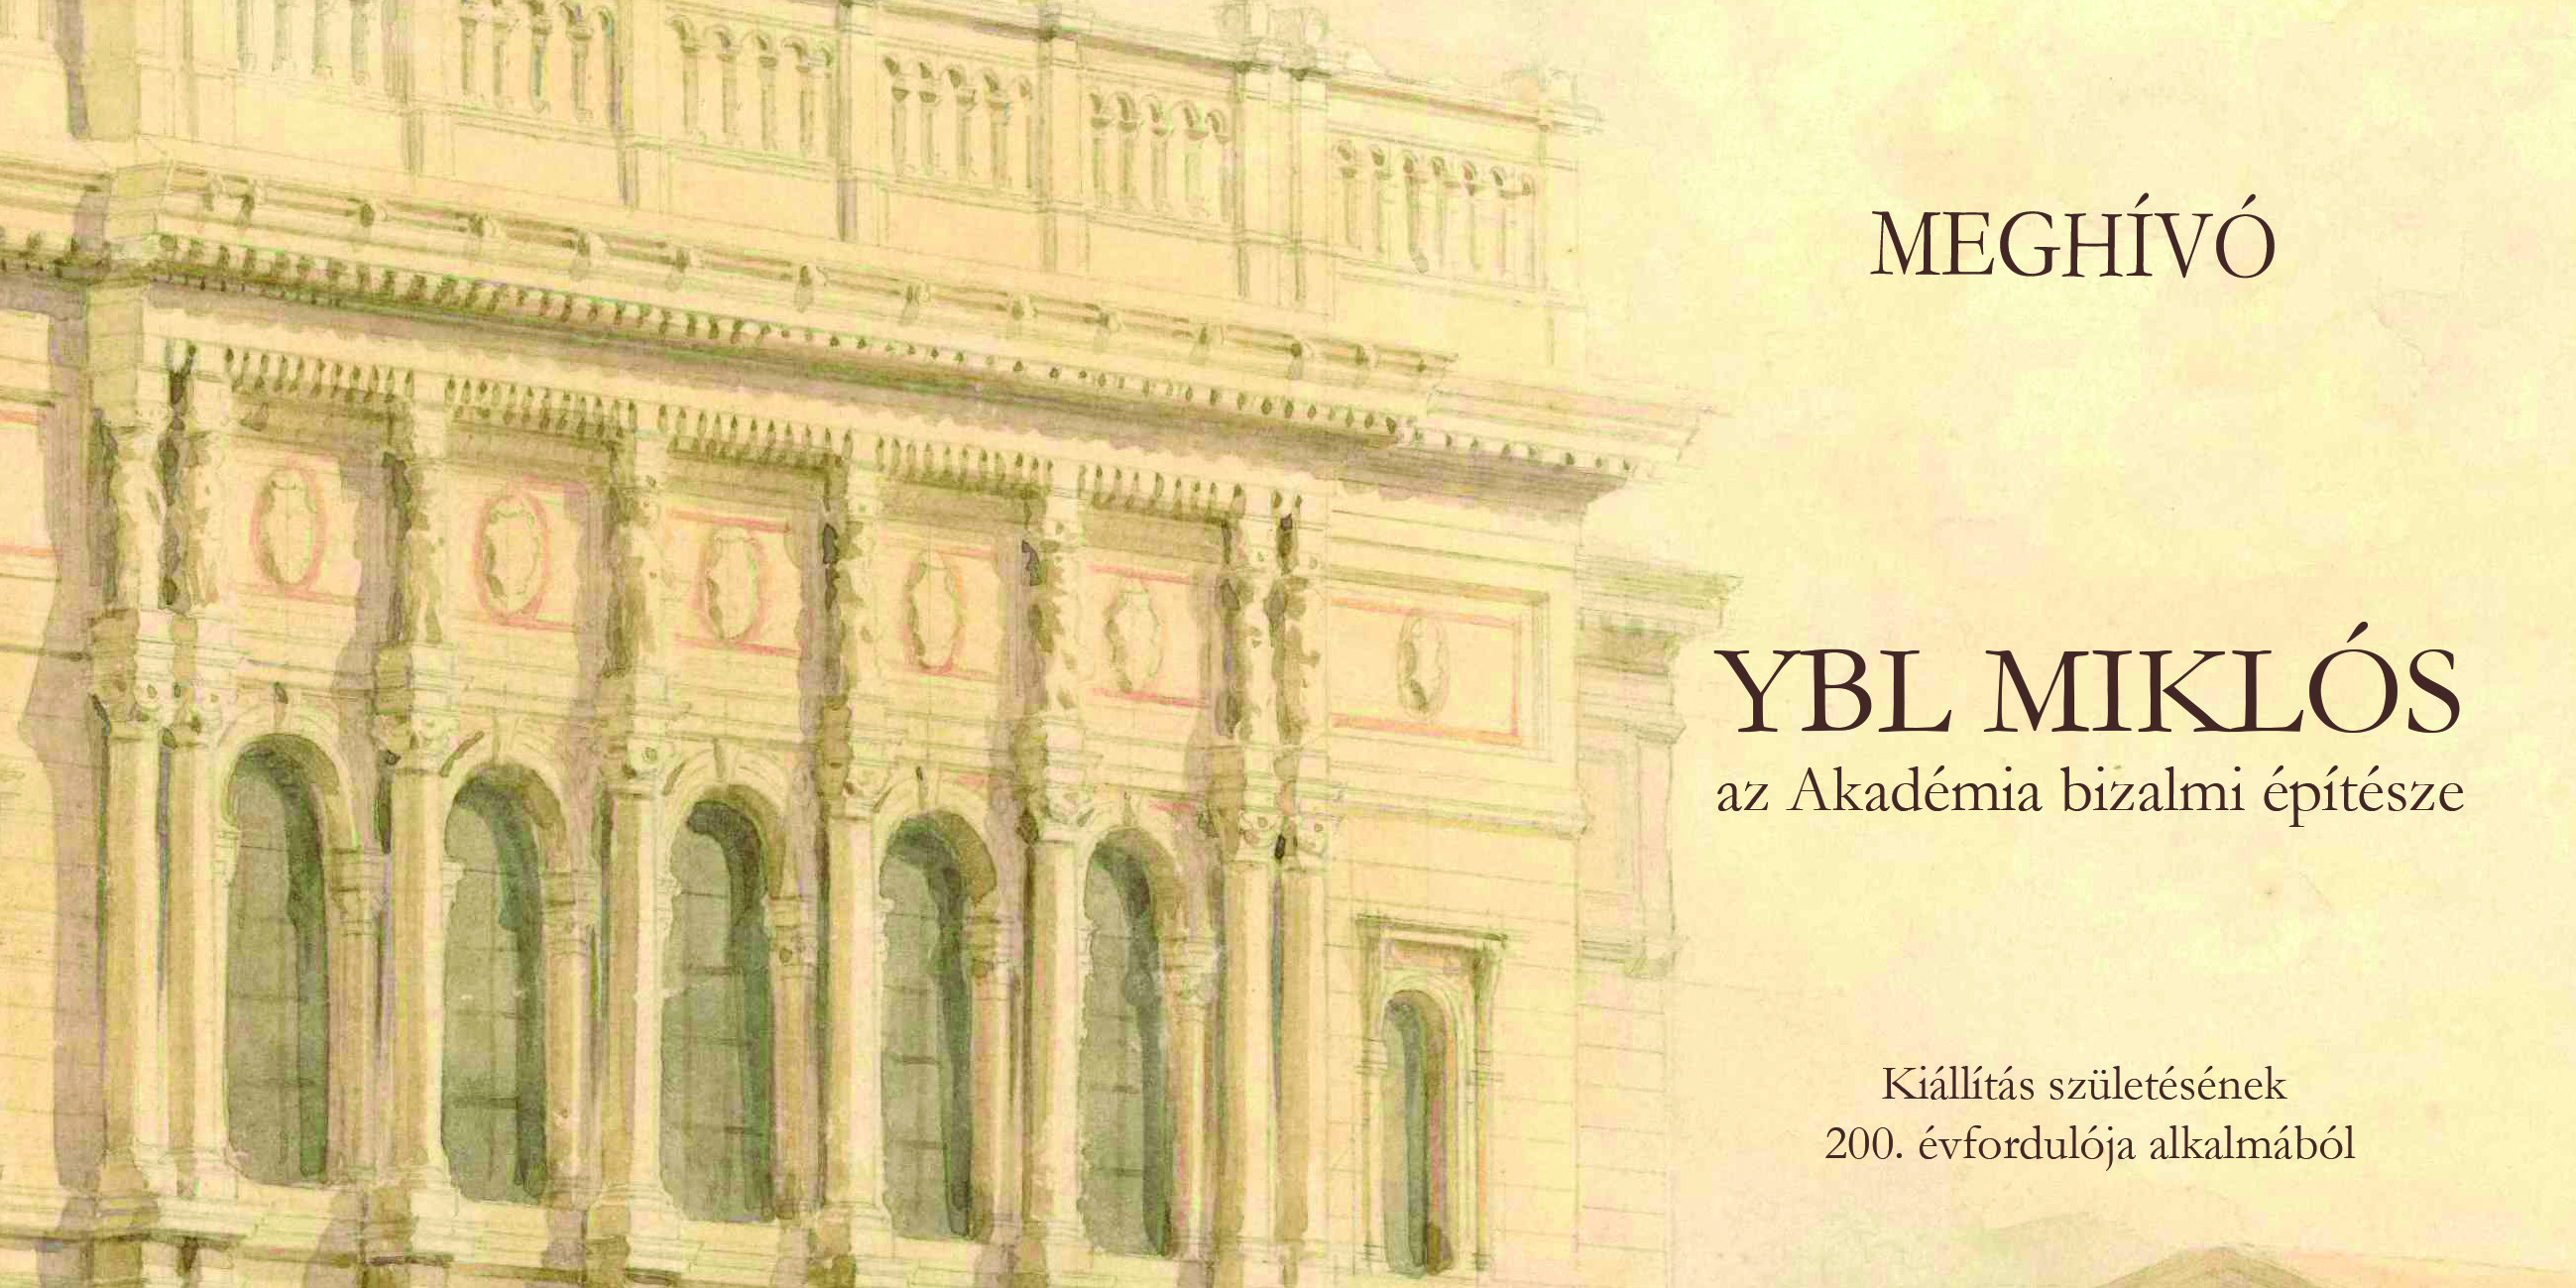 Konferencia és kiállítás Ybl Miklós emlékére az MTA Művészeti Gyűjteményében